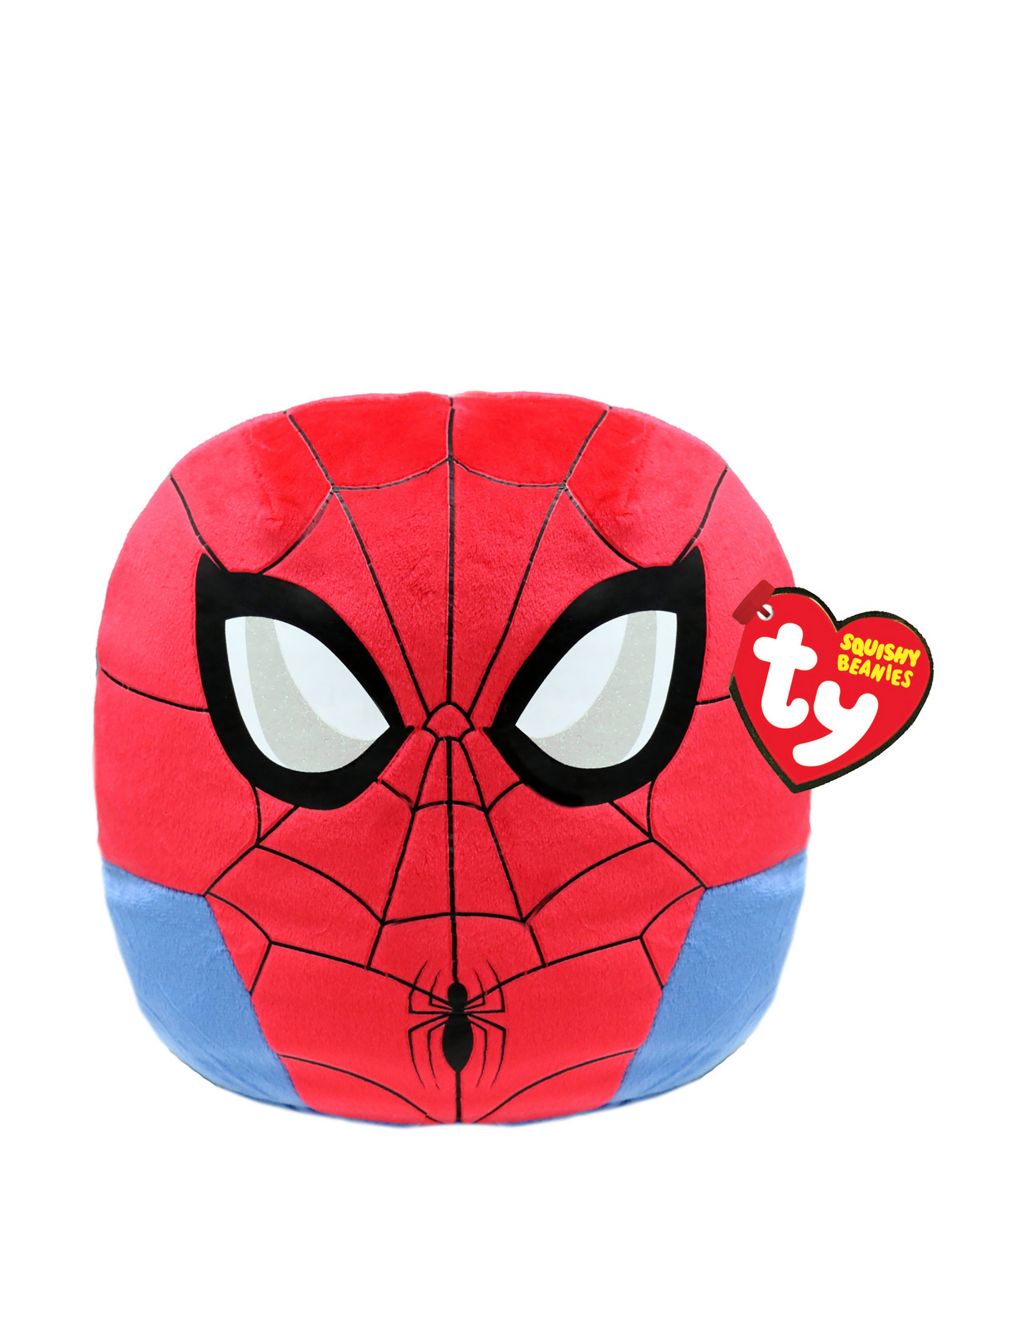 Spider-Man™ Squishy Beanie Toy (4-7 Years)